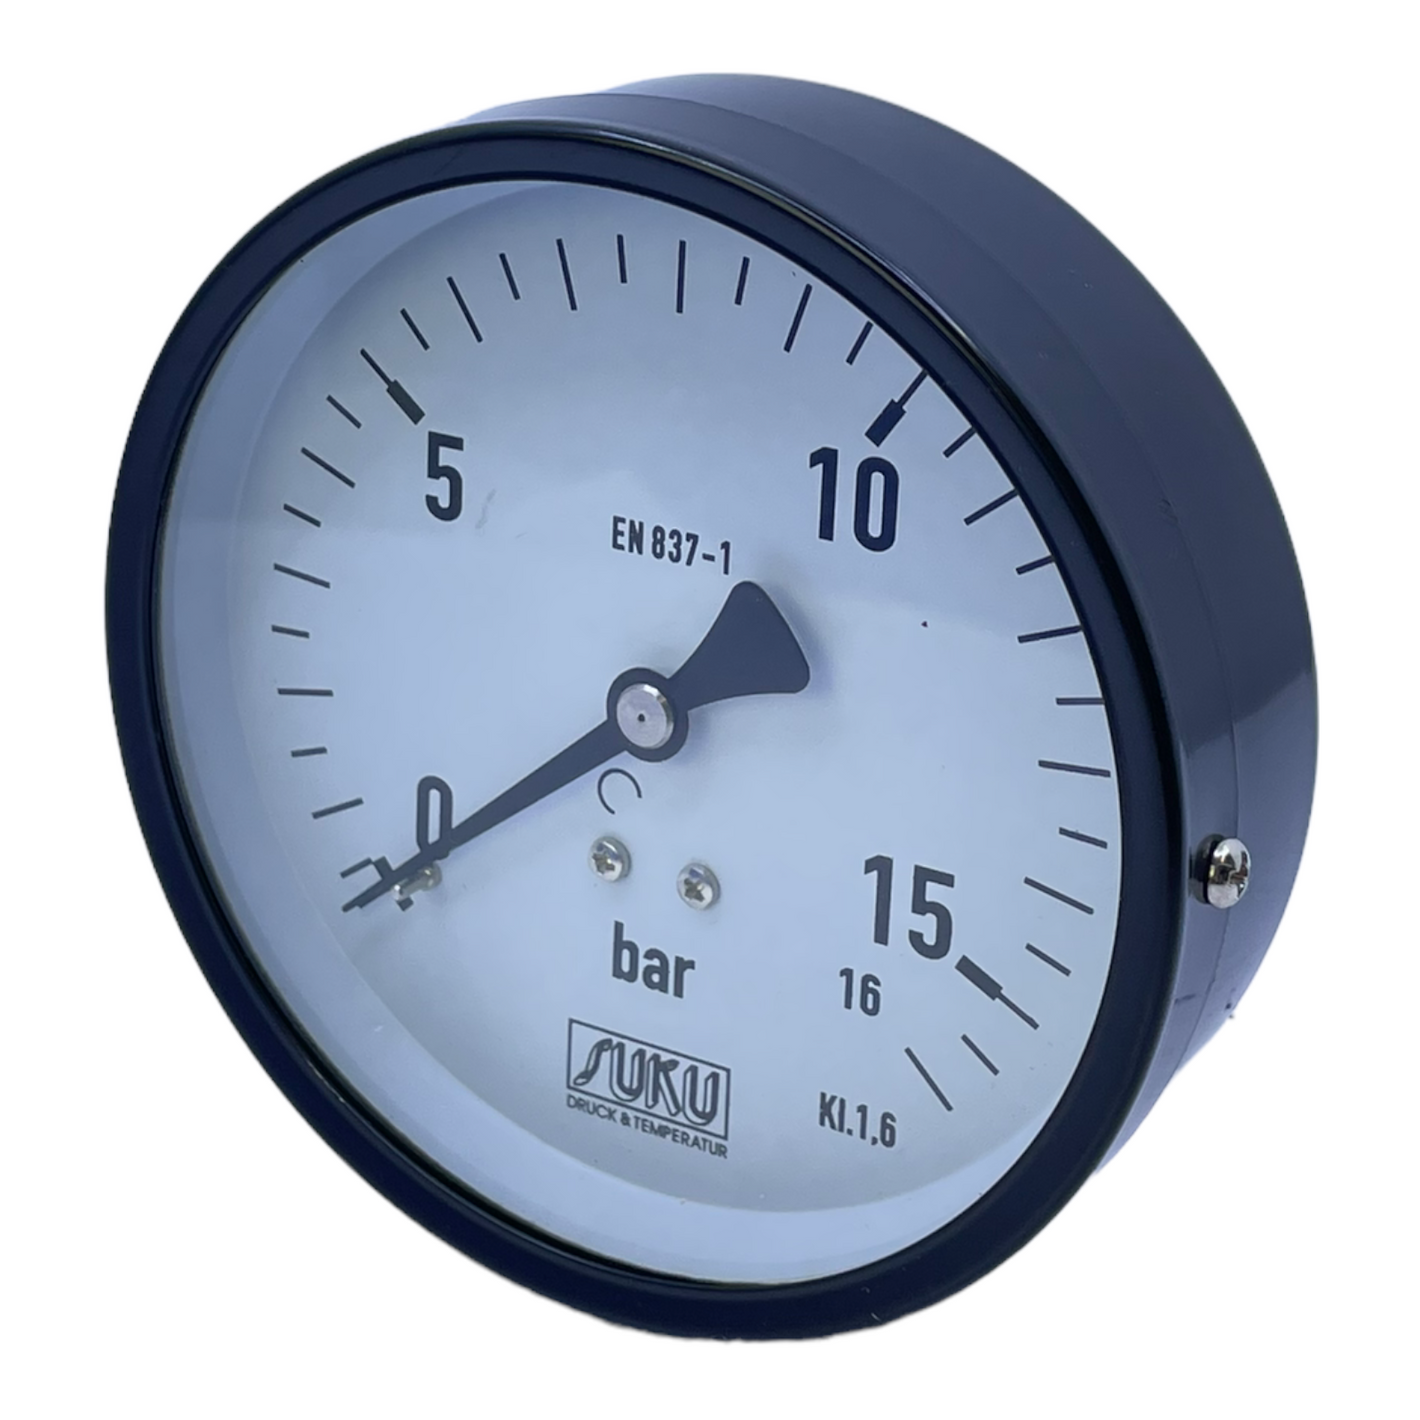 Pressure gauge 0-16 bar Pressure gauge